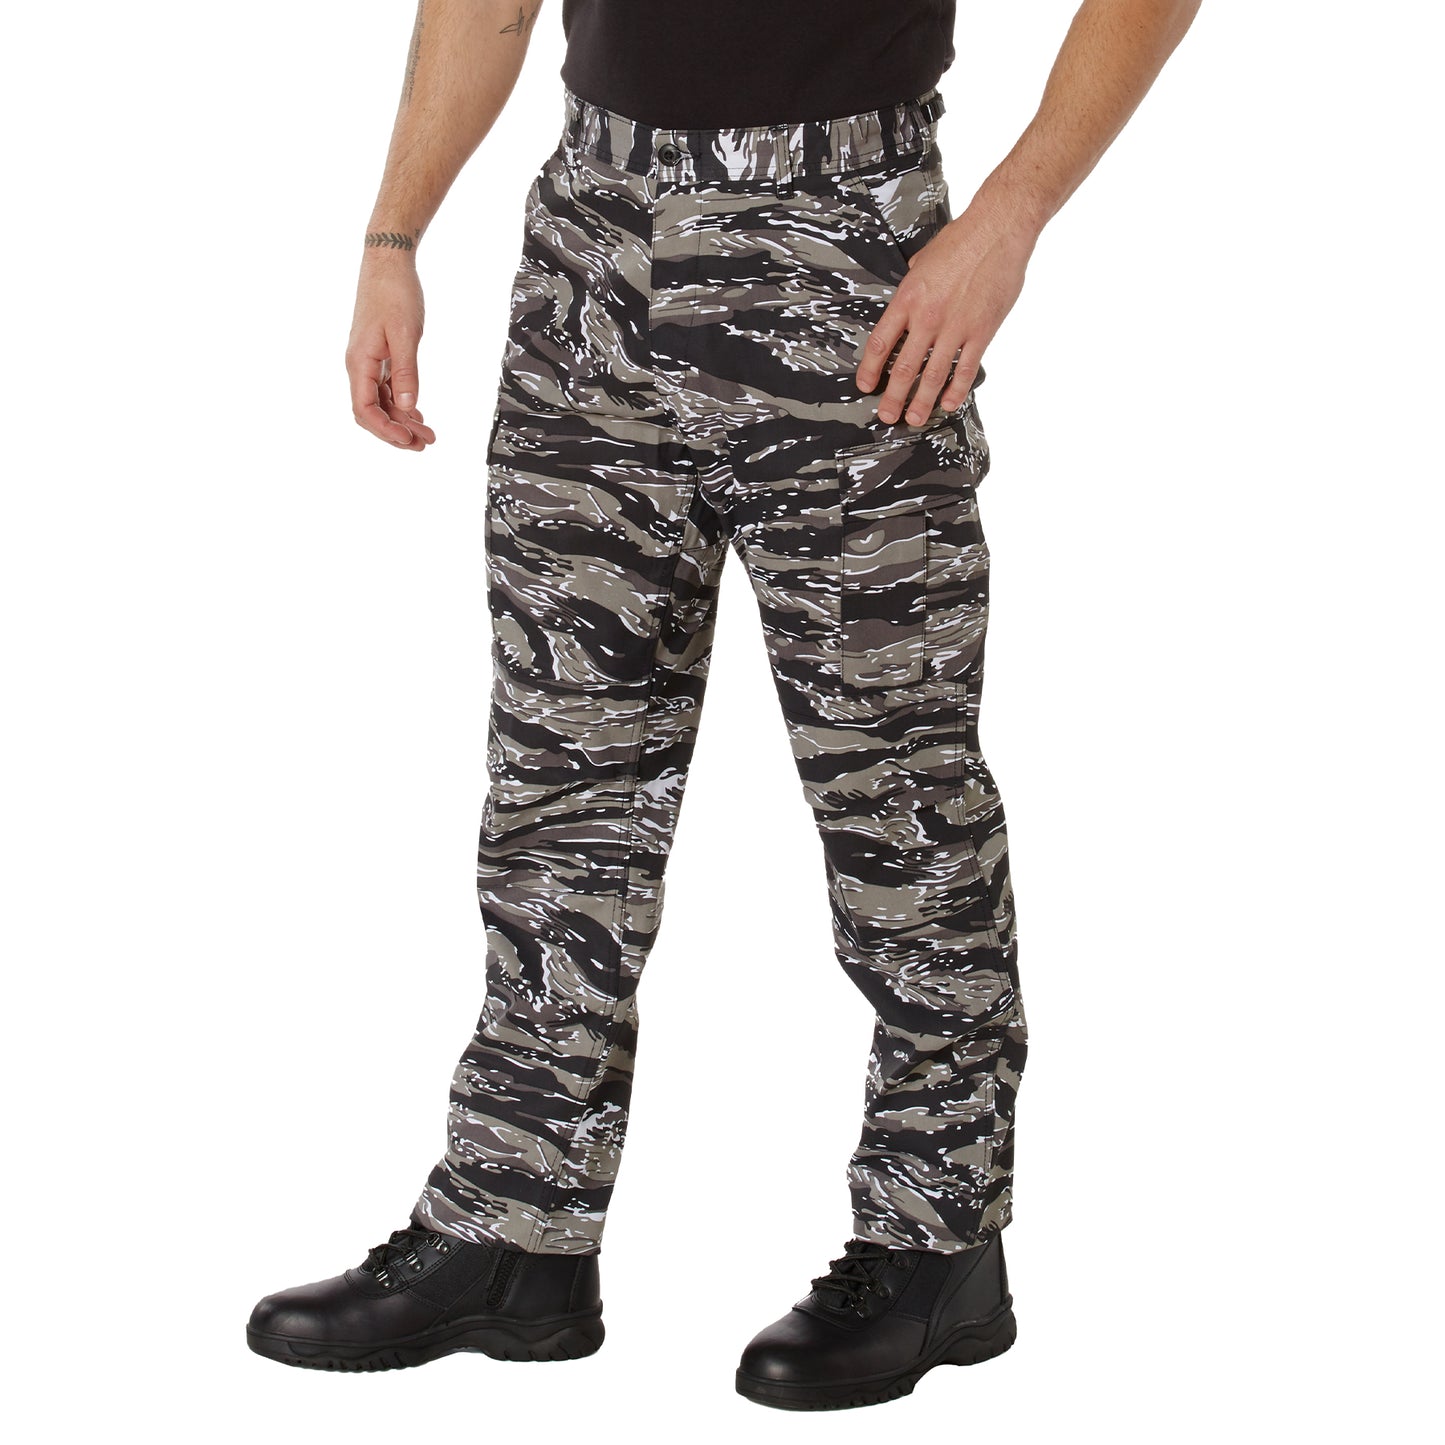 Rothco Color Camo Tactical BDU Pants - Urban Tiger Stripe Camo